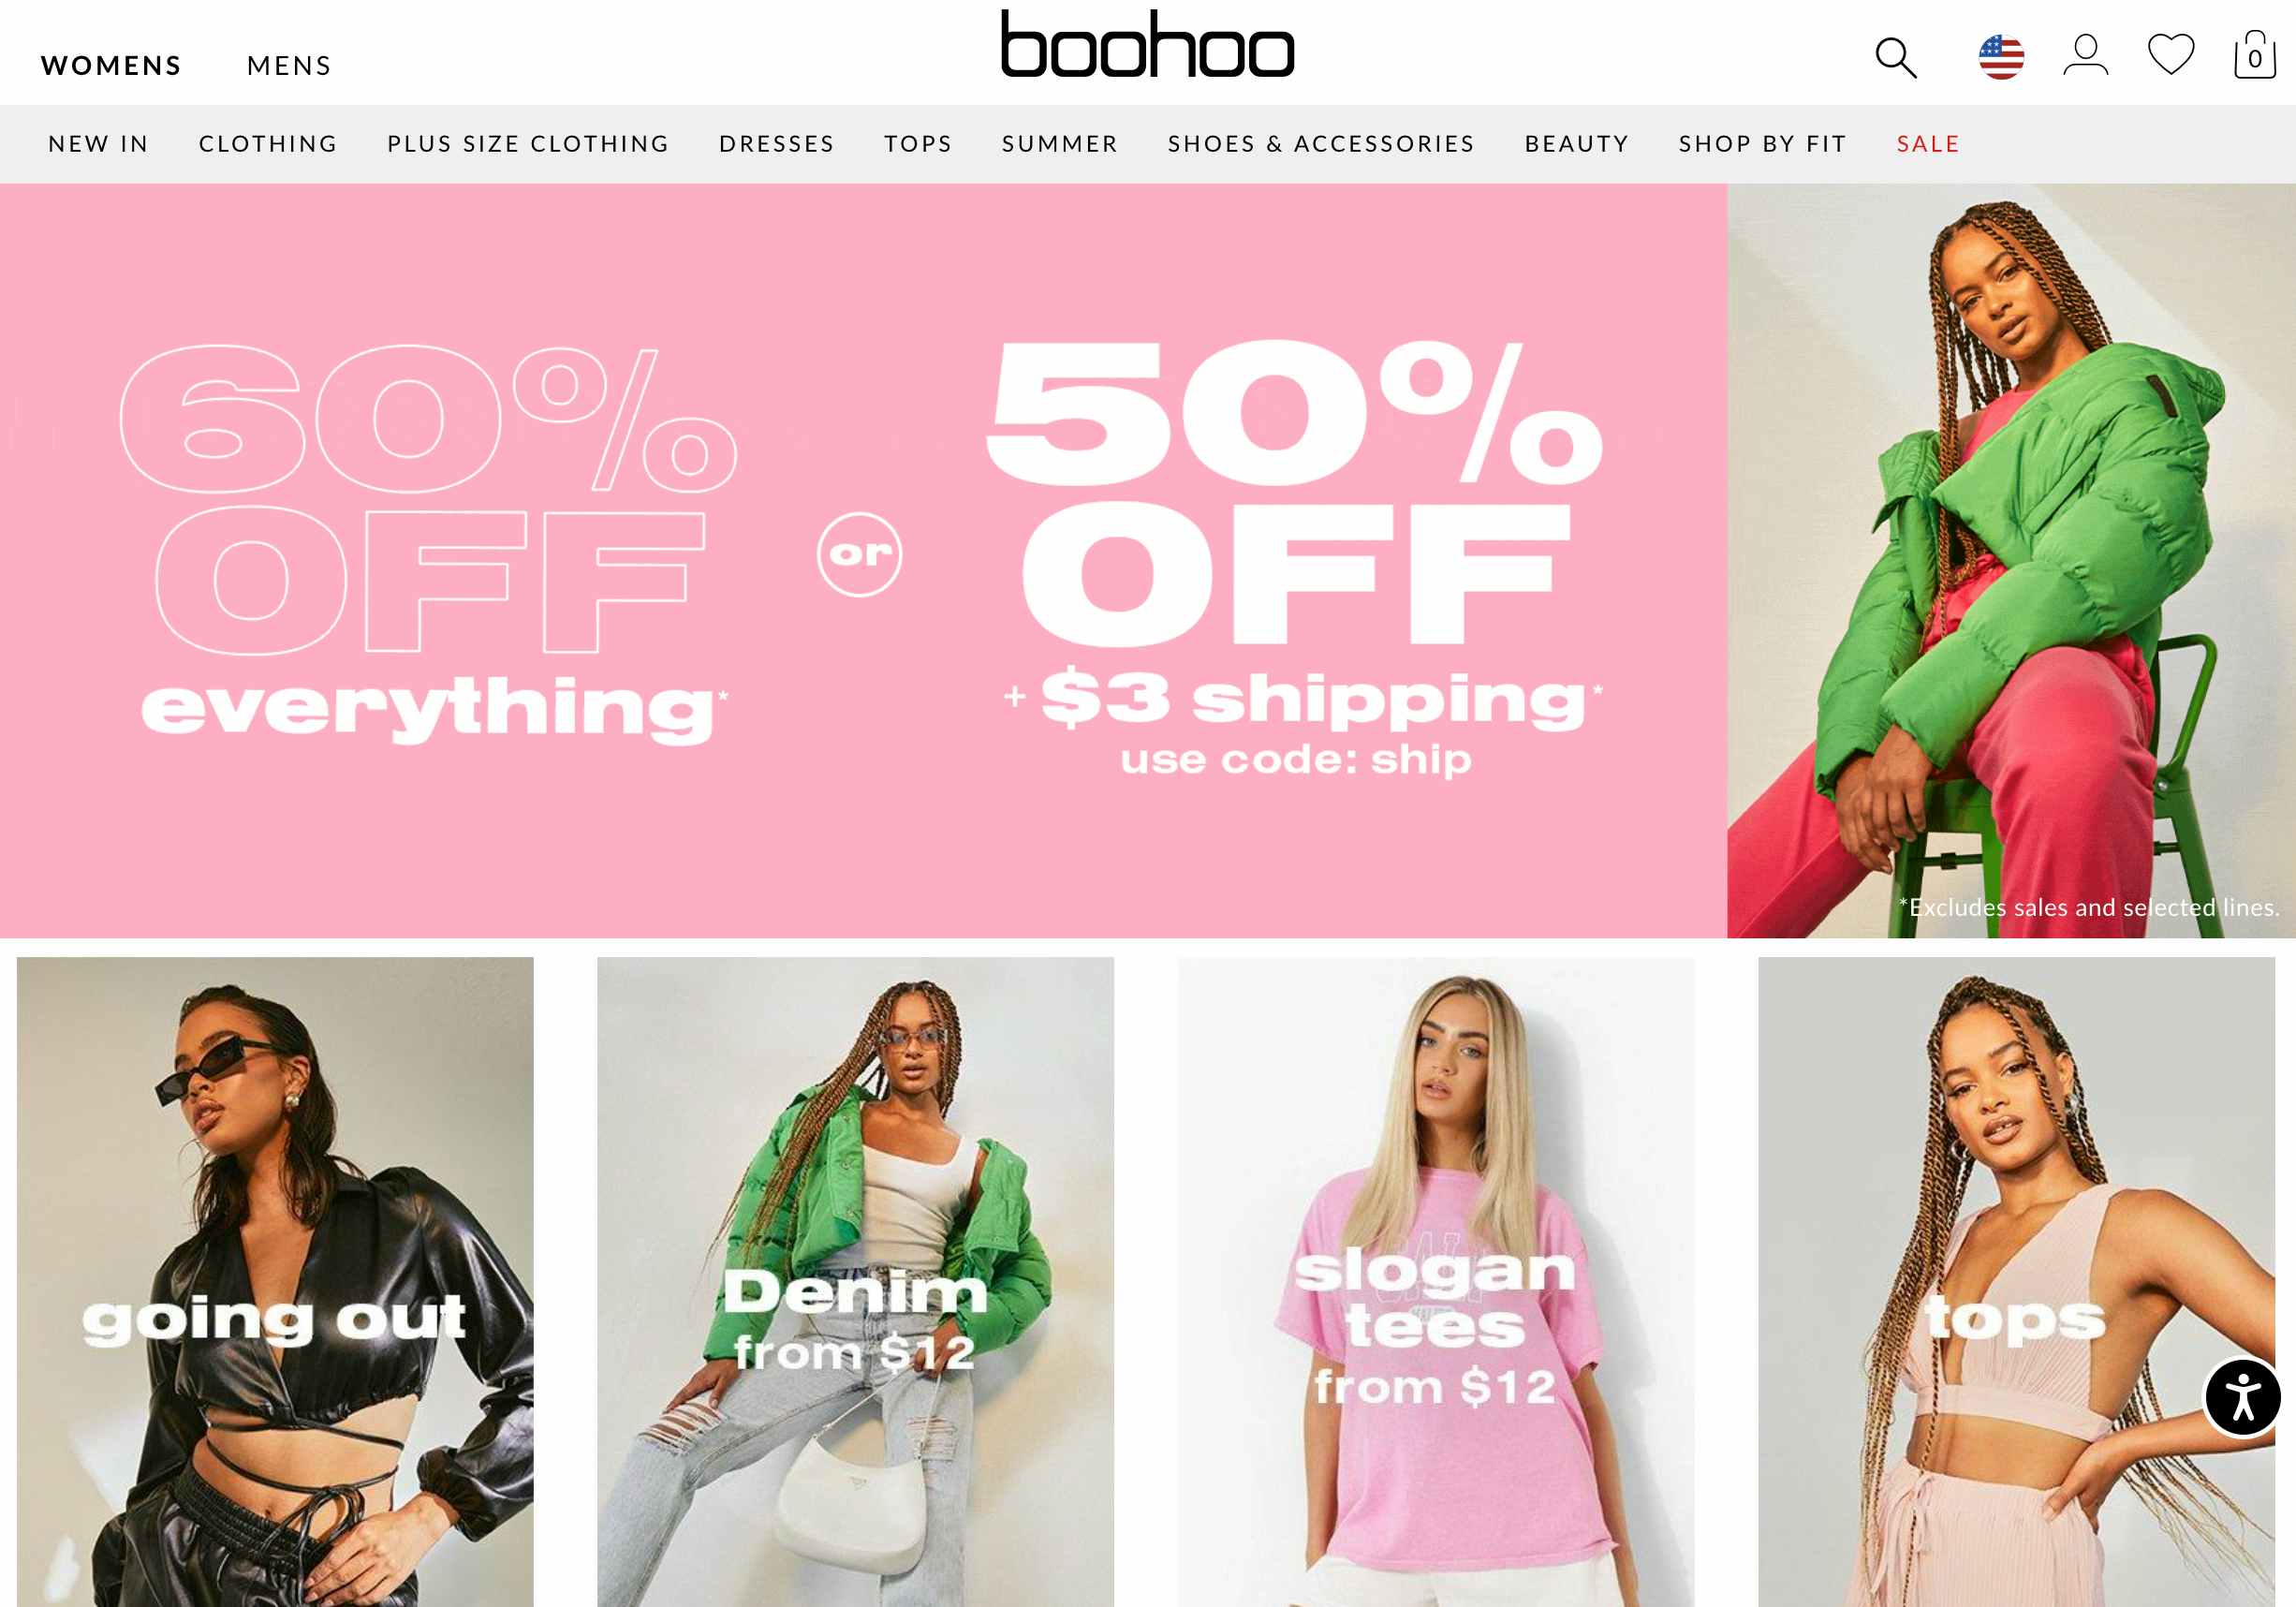 boohoo website homepage